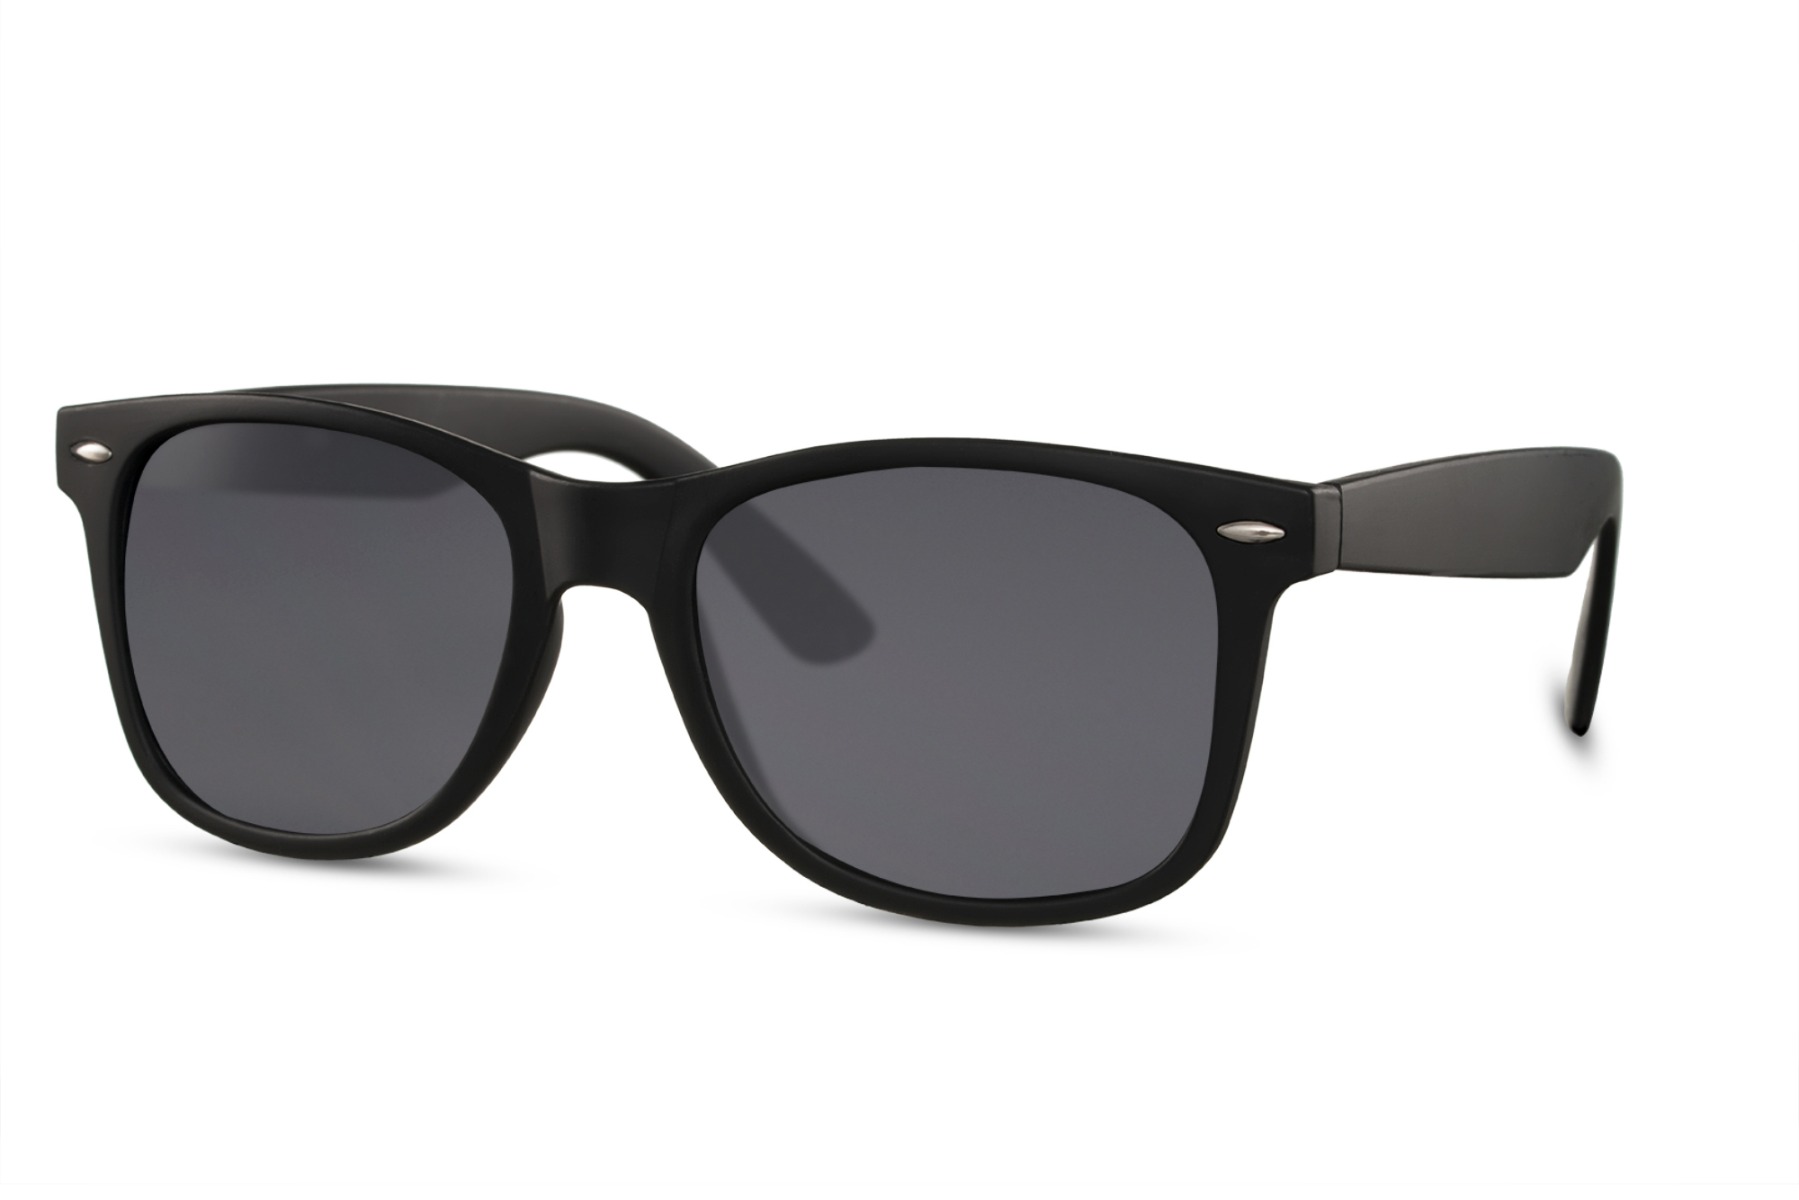 Buy Green Lens Black Frame Wayfarer Sunglasses for Men and Women Online at  Best Prices in India - JioMart.